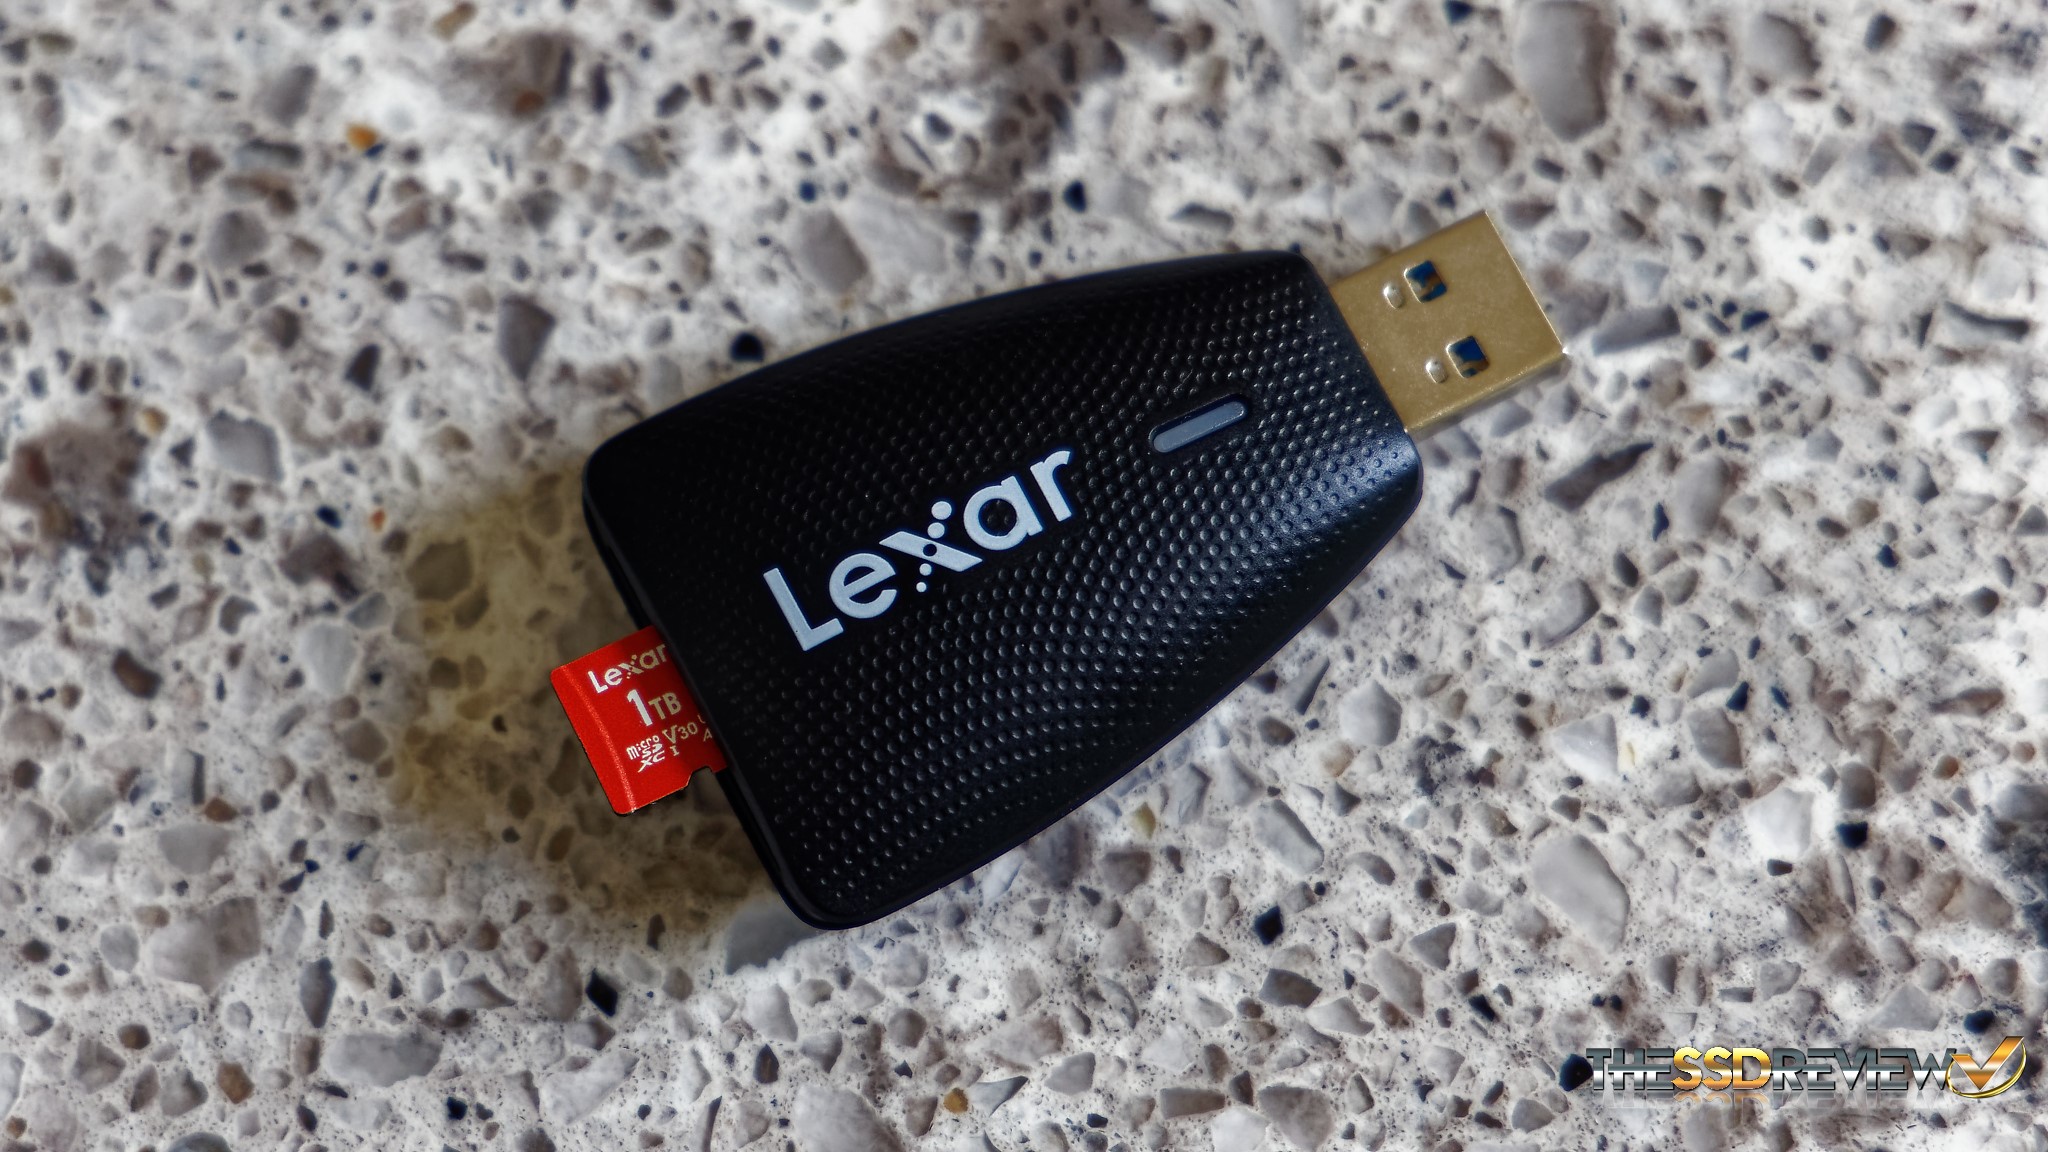 Lexar 1TB SD card and 1TB microSD card 